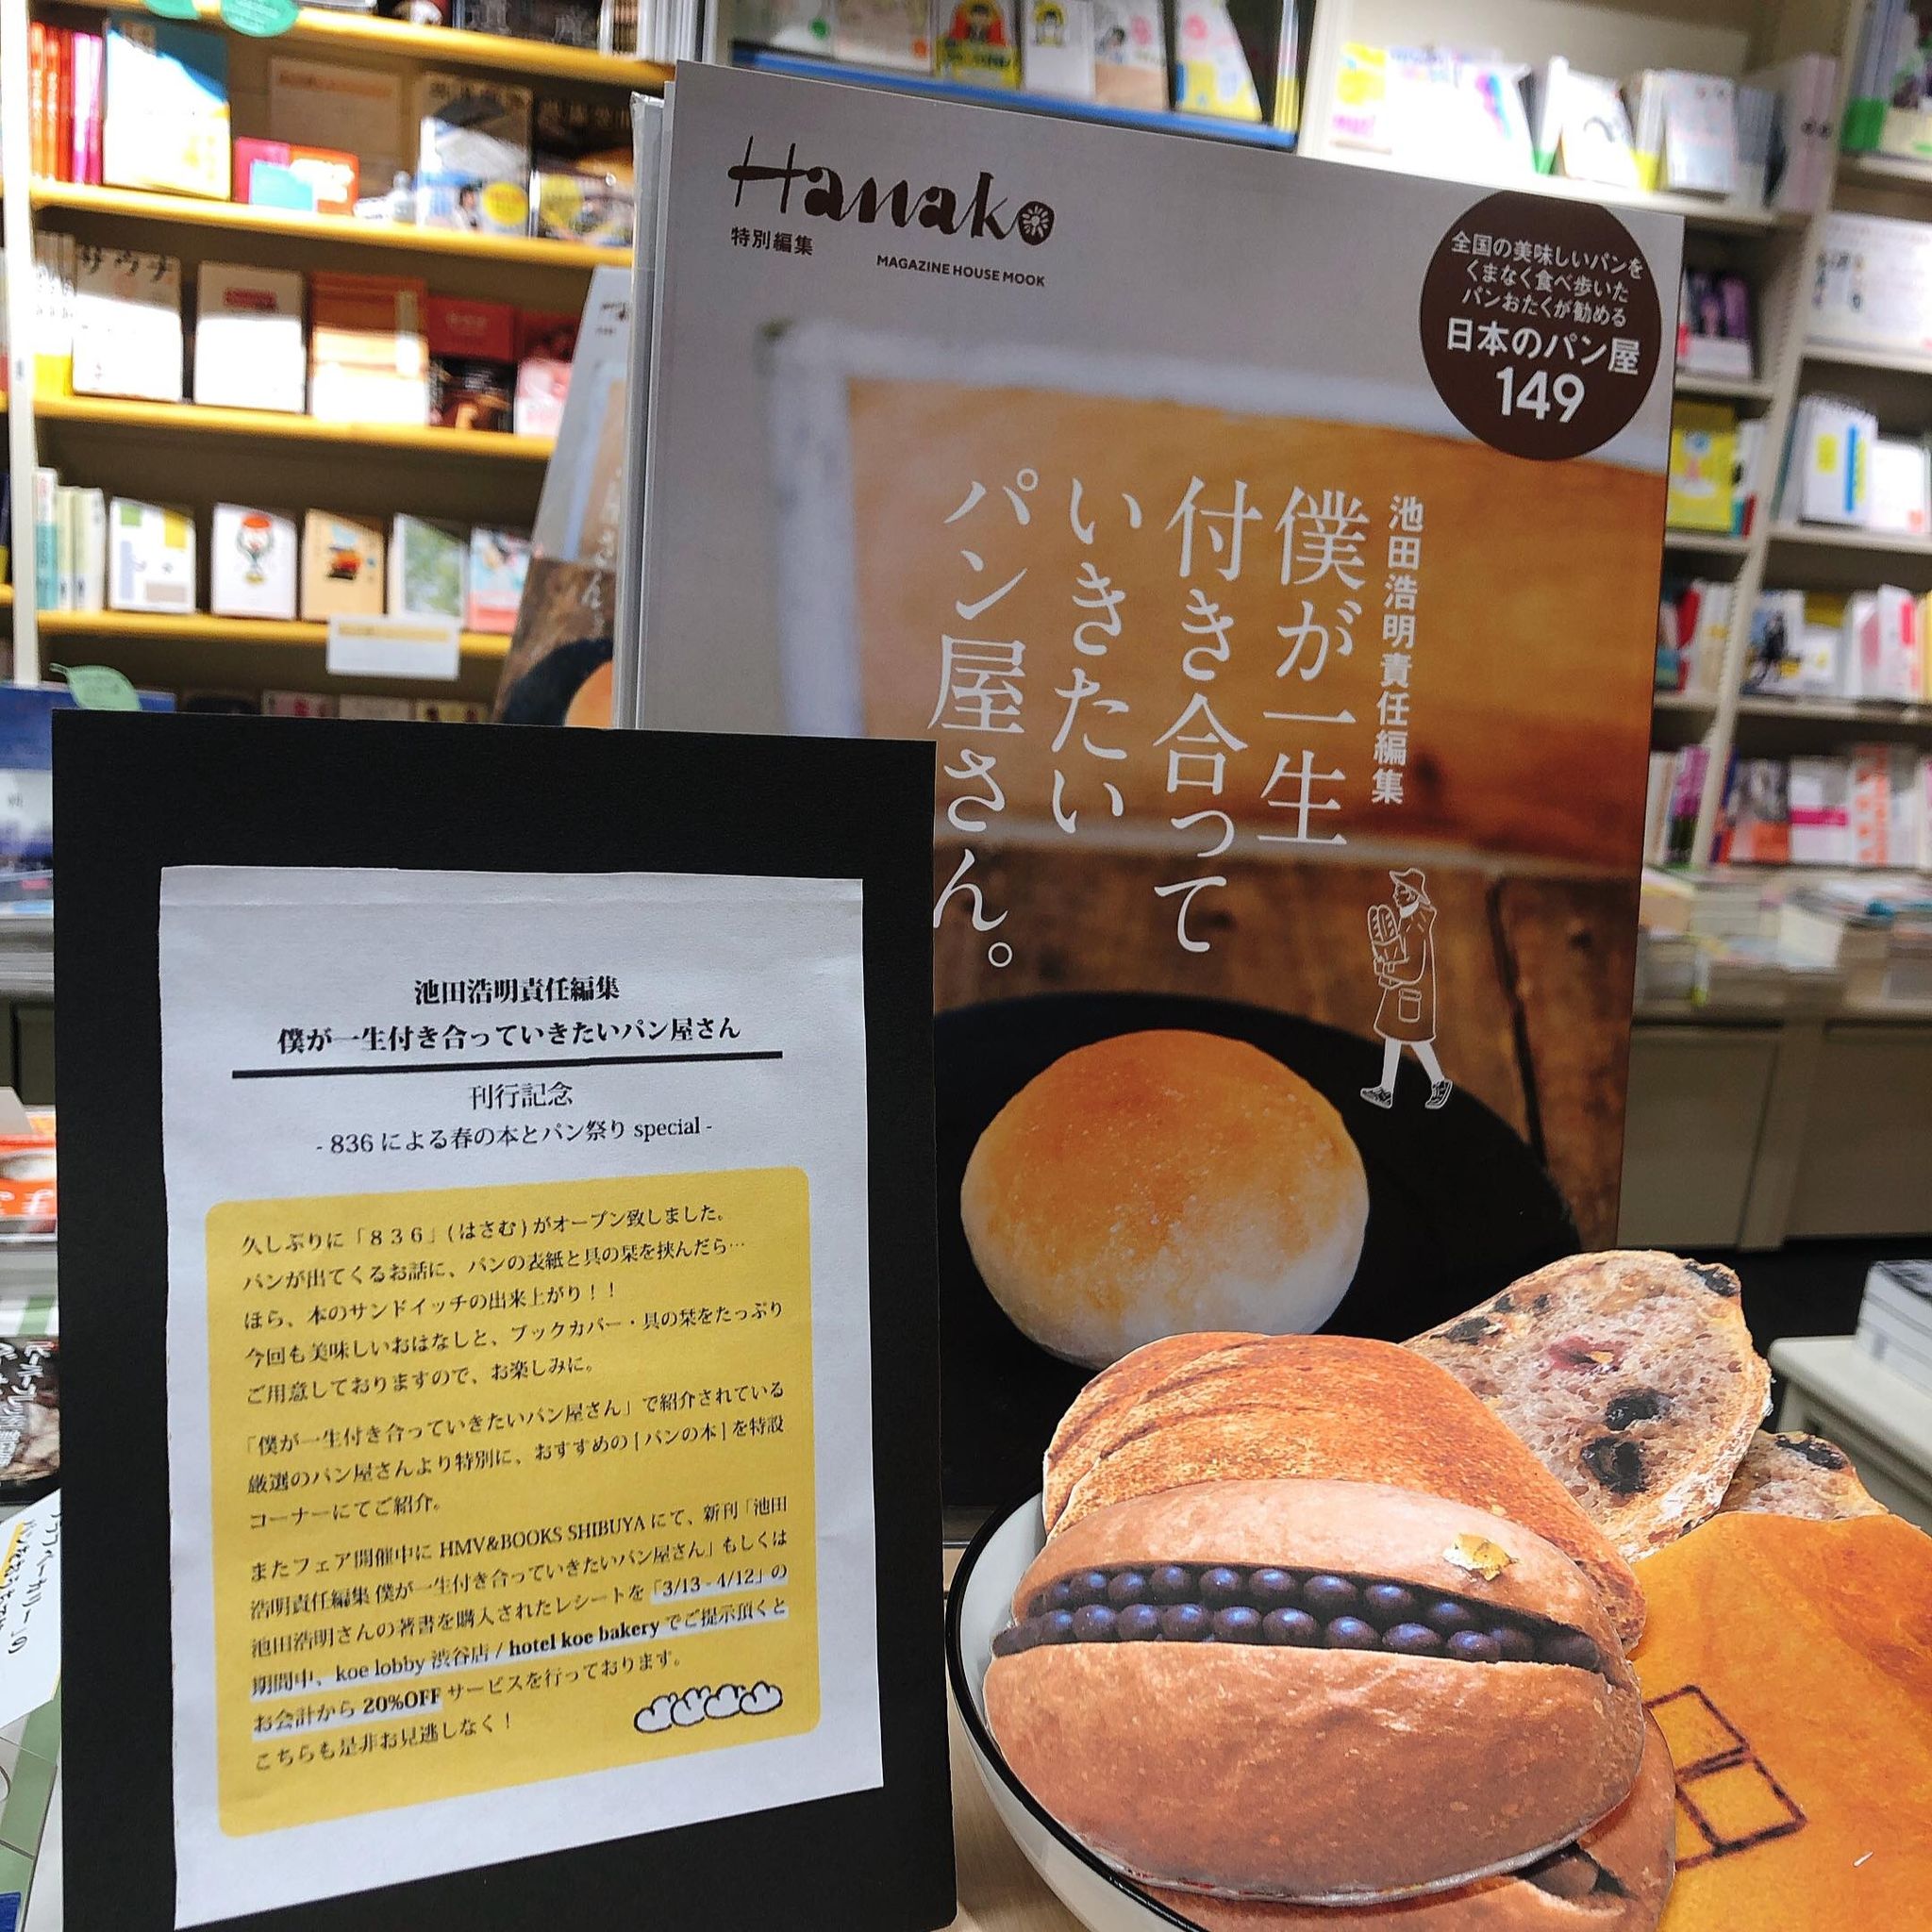 ブックフェアを Hmv Books Shibuya で開催 僕が一生付き合っていきたいパン屋さん 刊行記念 Hanako Tokyo 149軒のベーカリーを愛情たっぷりの文章で ｄメニューニュース Nttドコモ